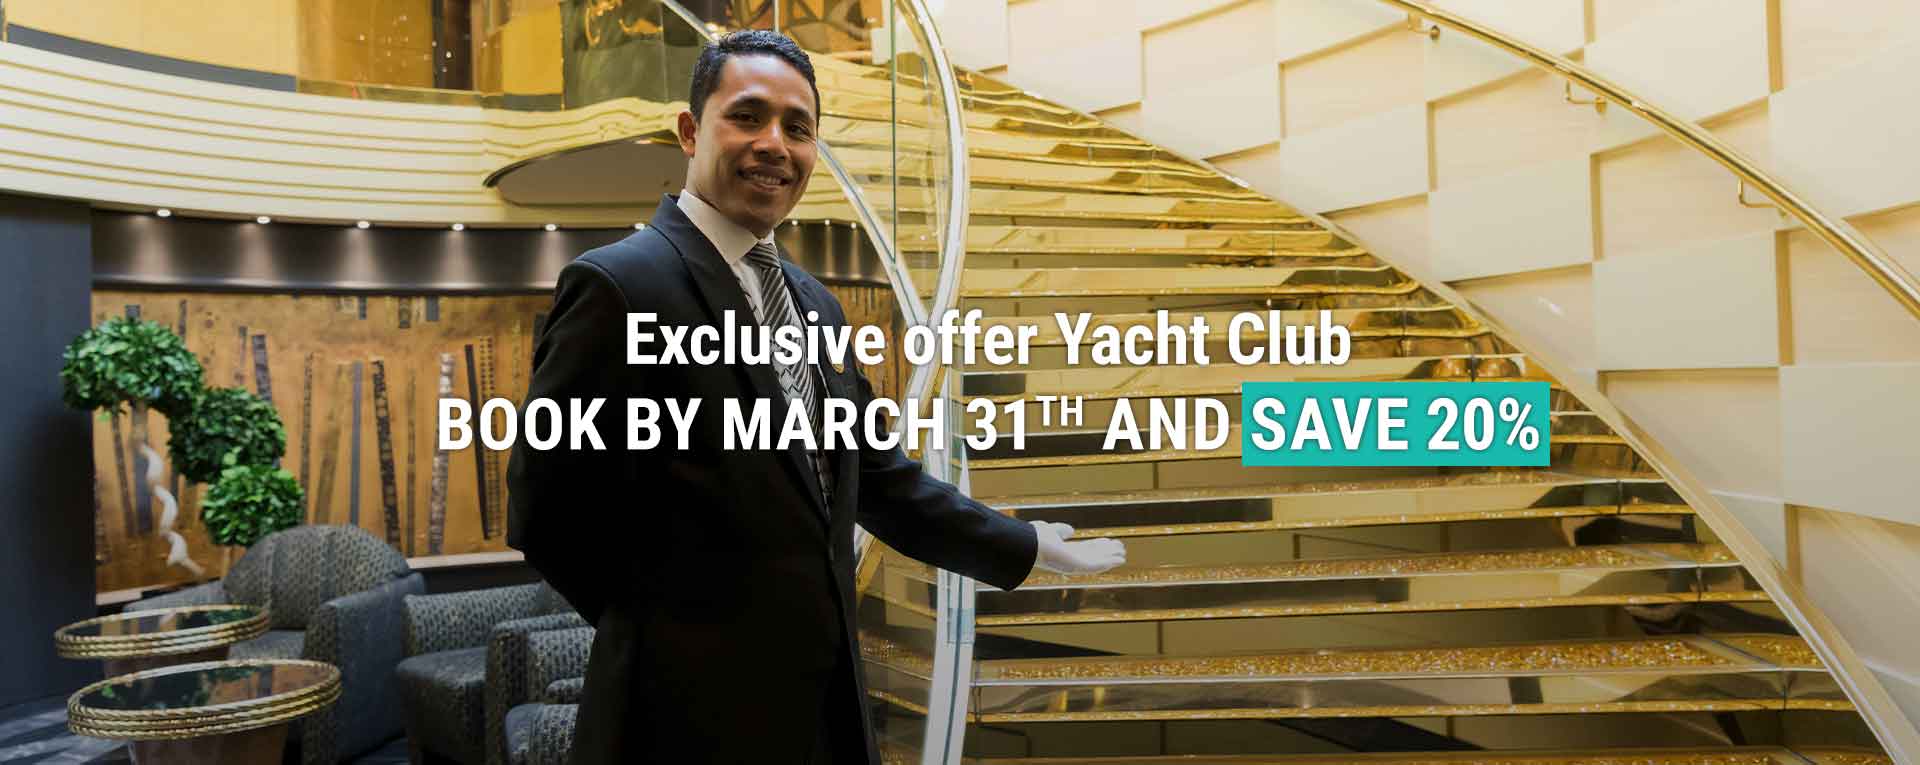 Msc Yacht Club